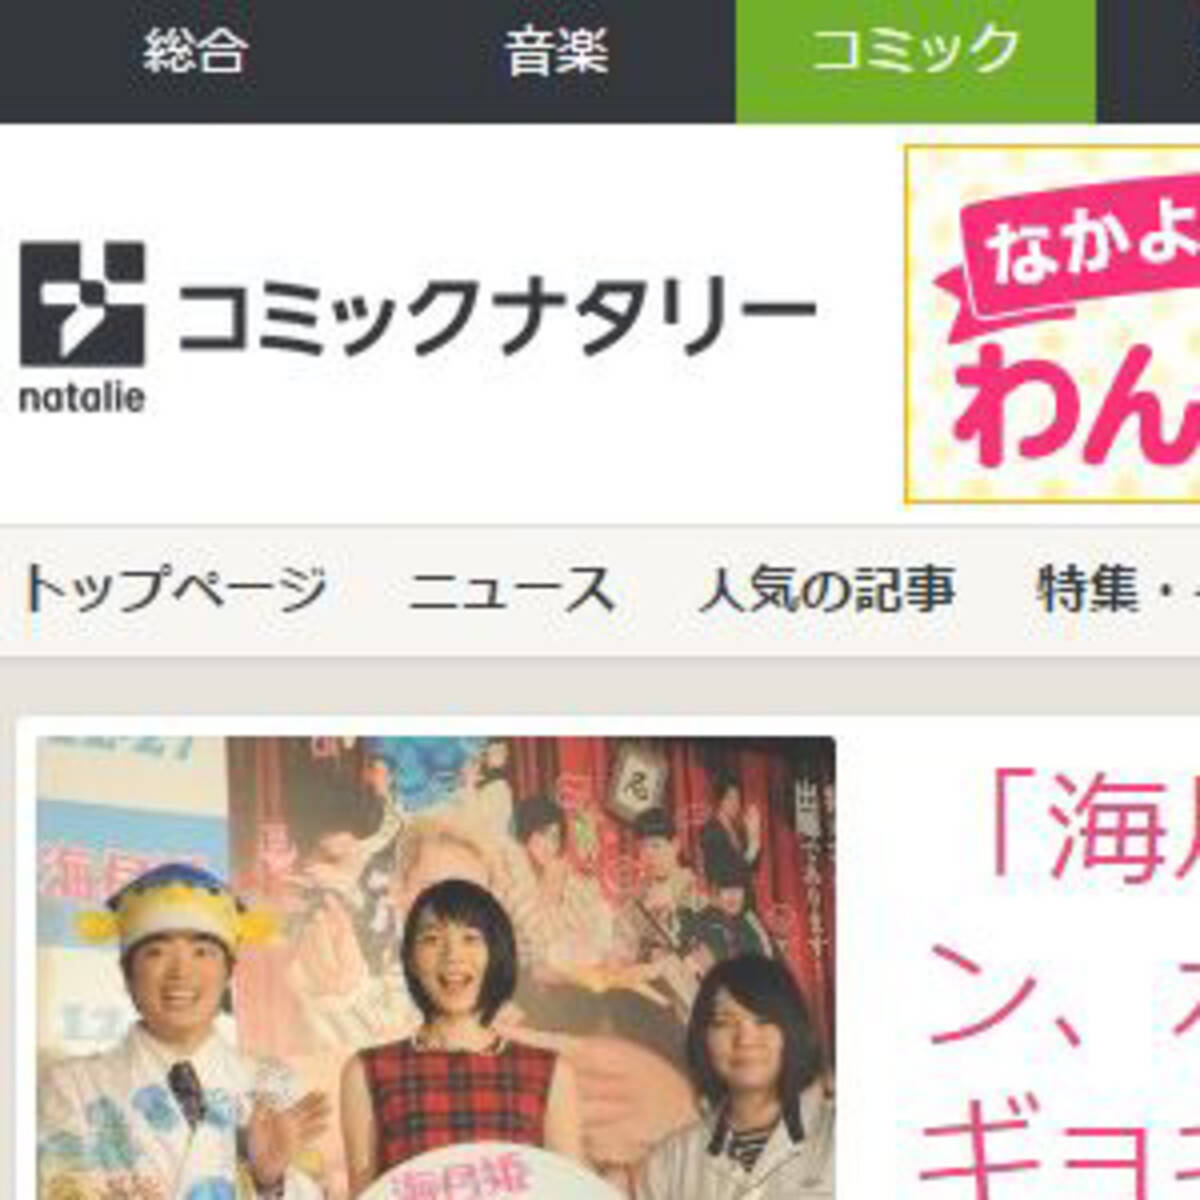 海月姫 東村アキコがブログで告白 コミックナタリーに 勝手に広告塔にされた ギャラ返却へ 14年12月16日 エキサイトニュース